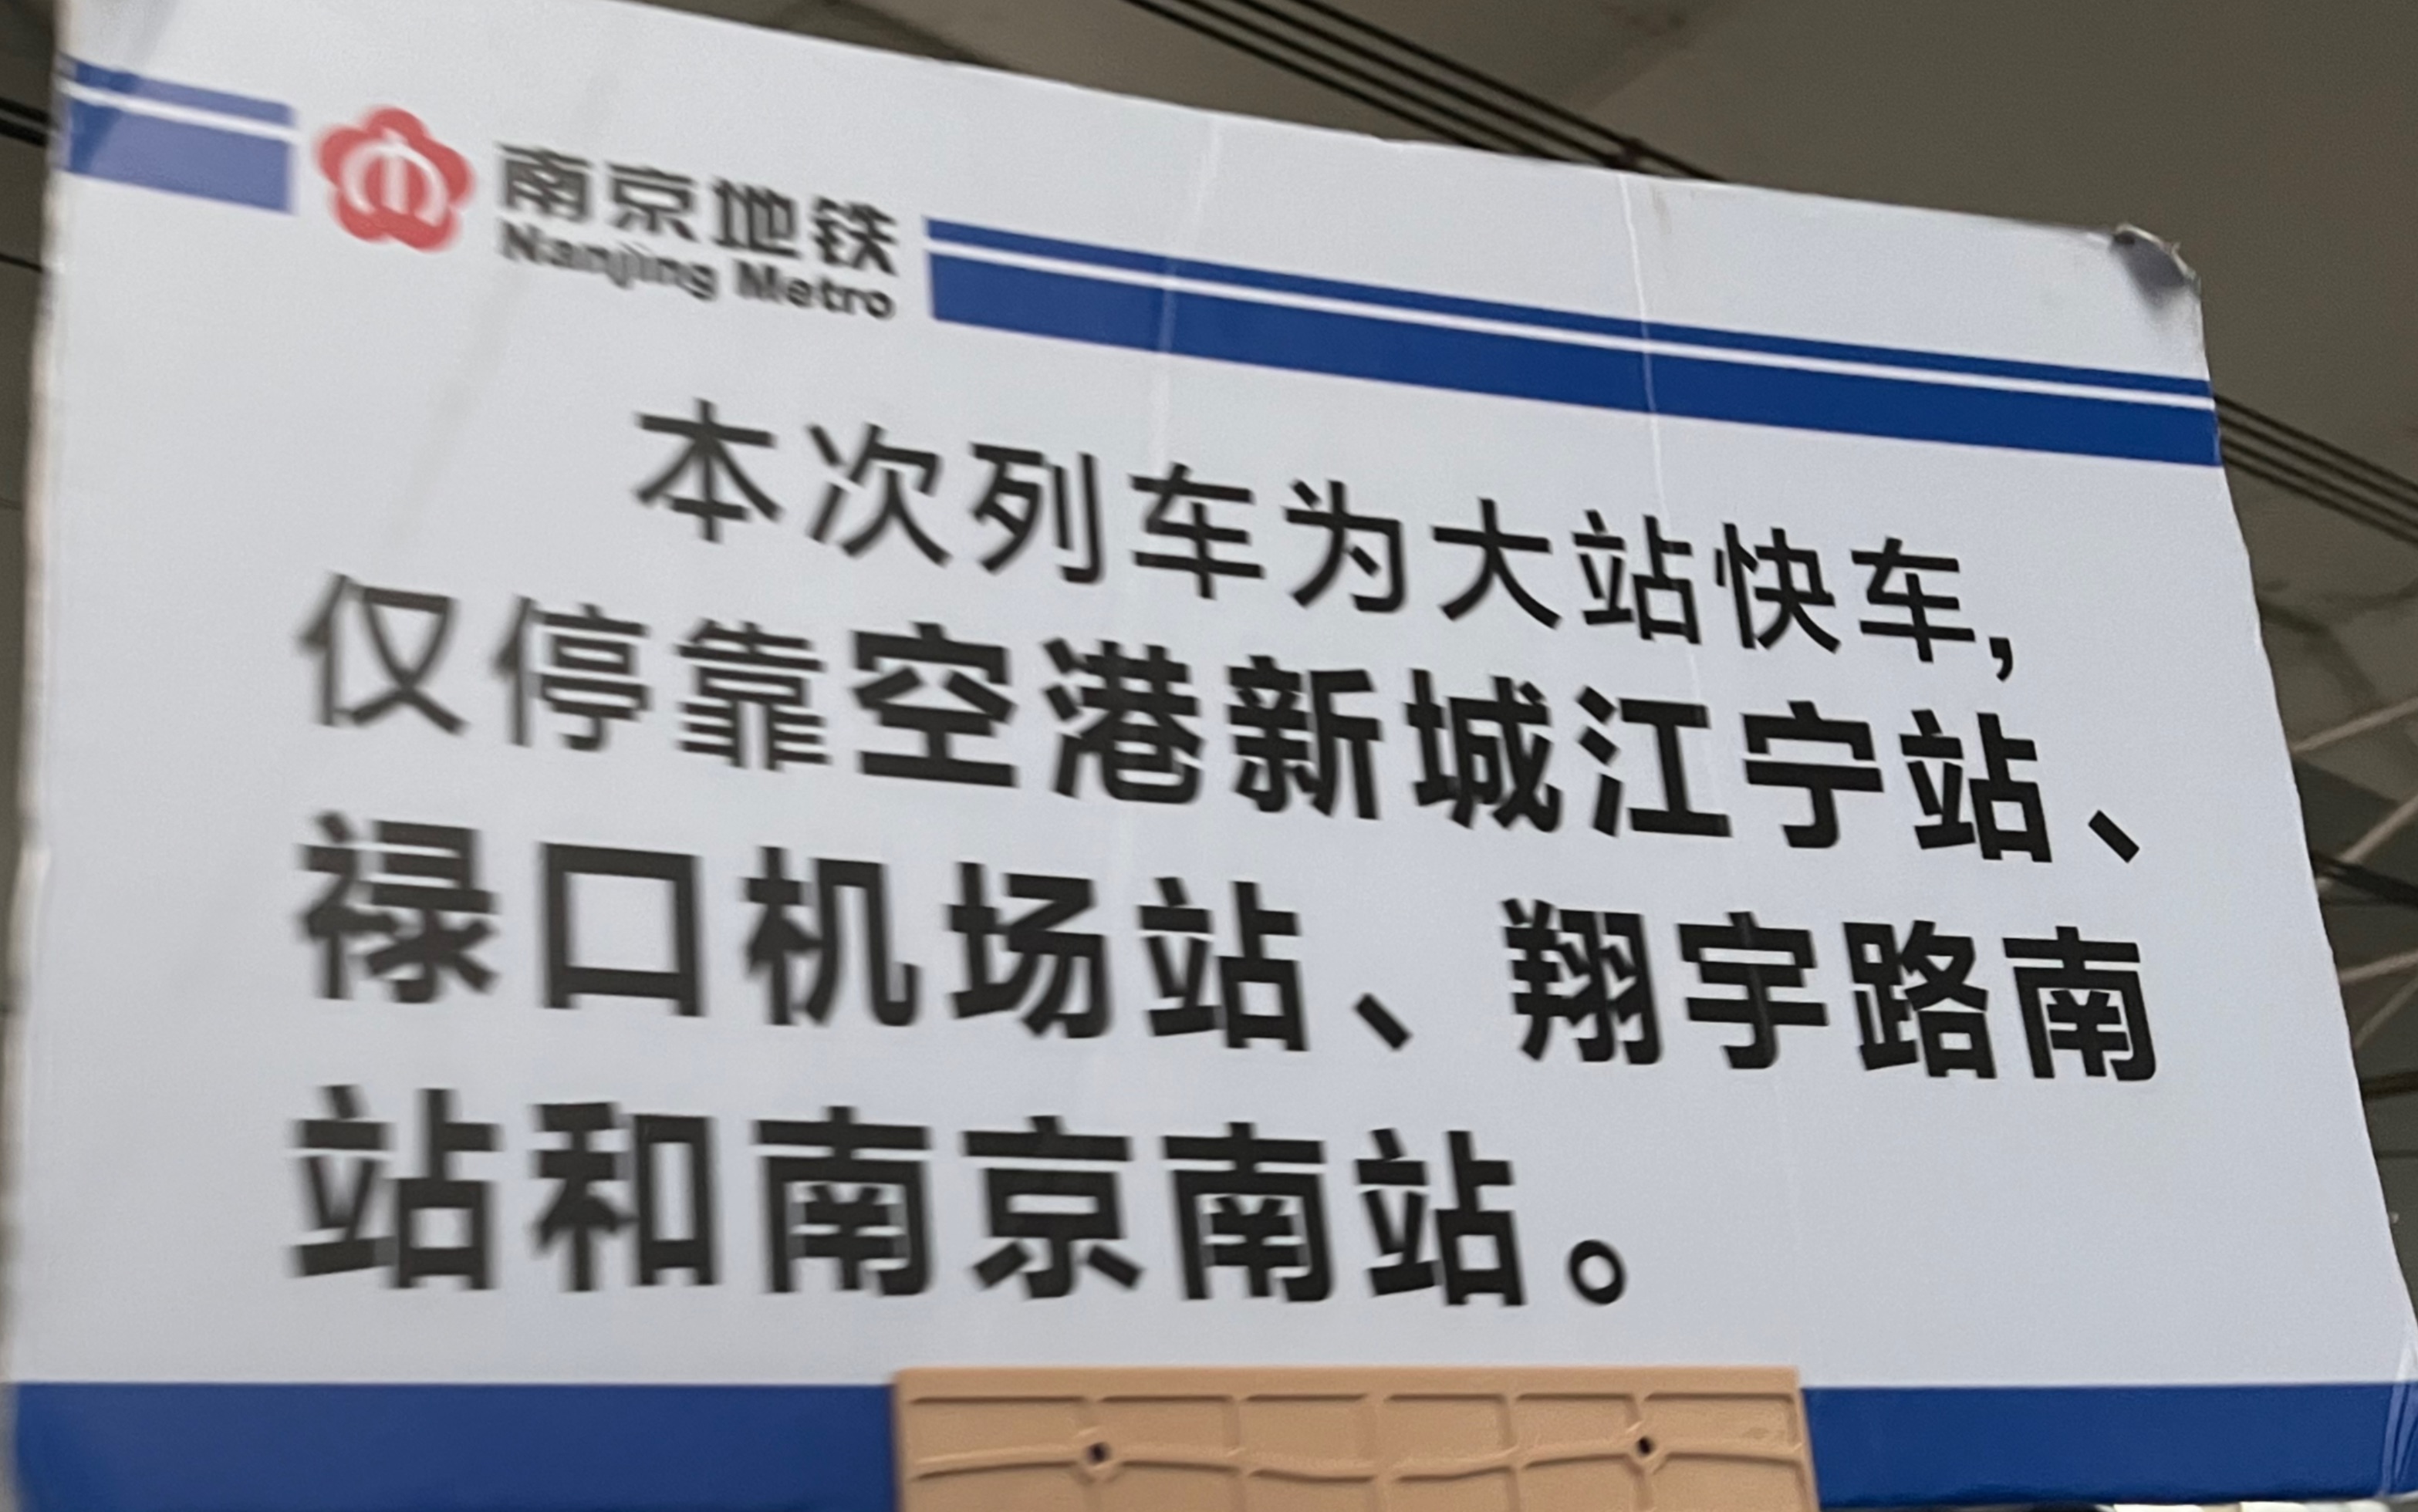 南京机场s1号线时间表图片